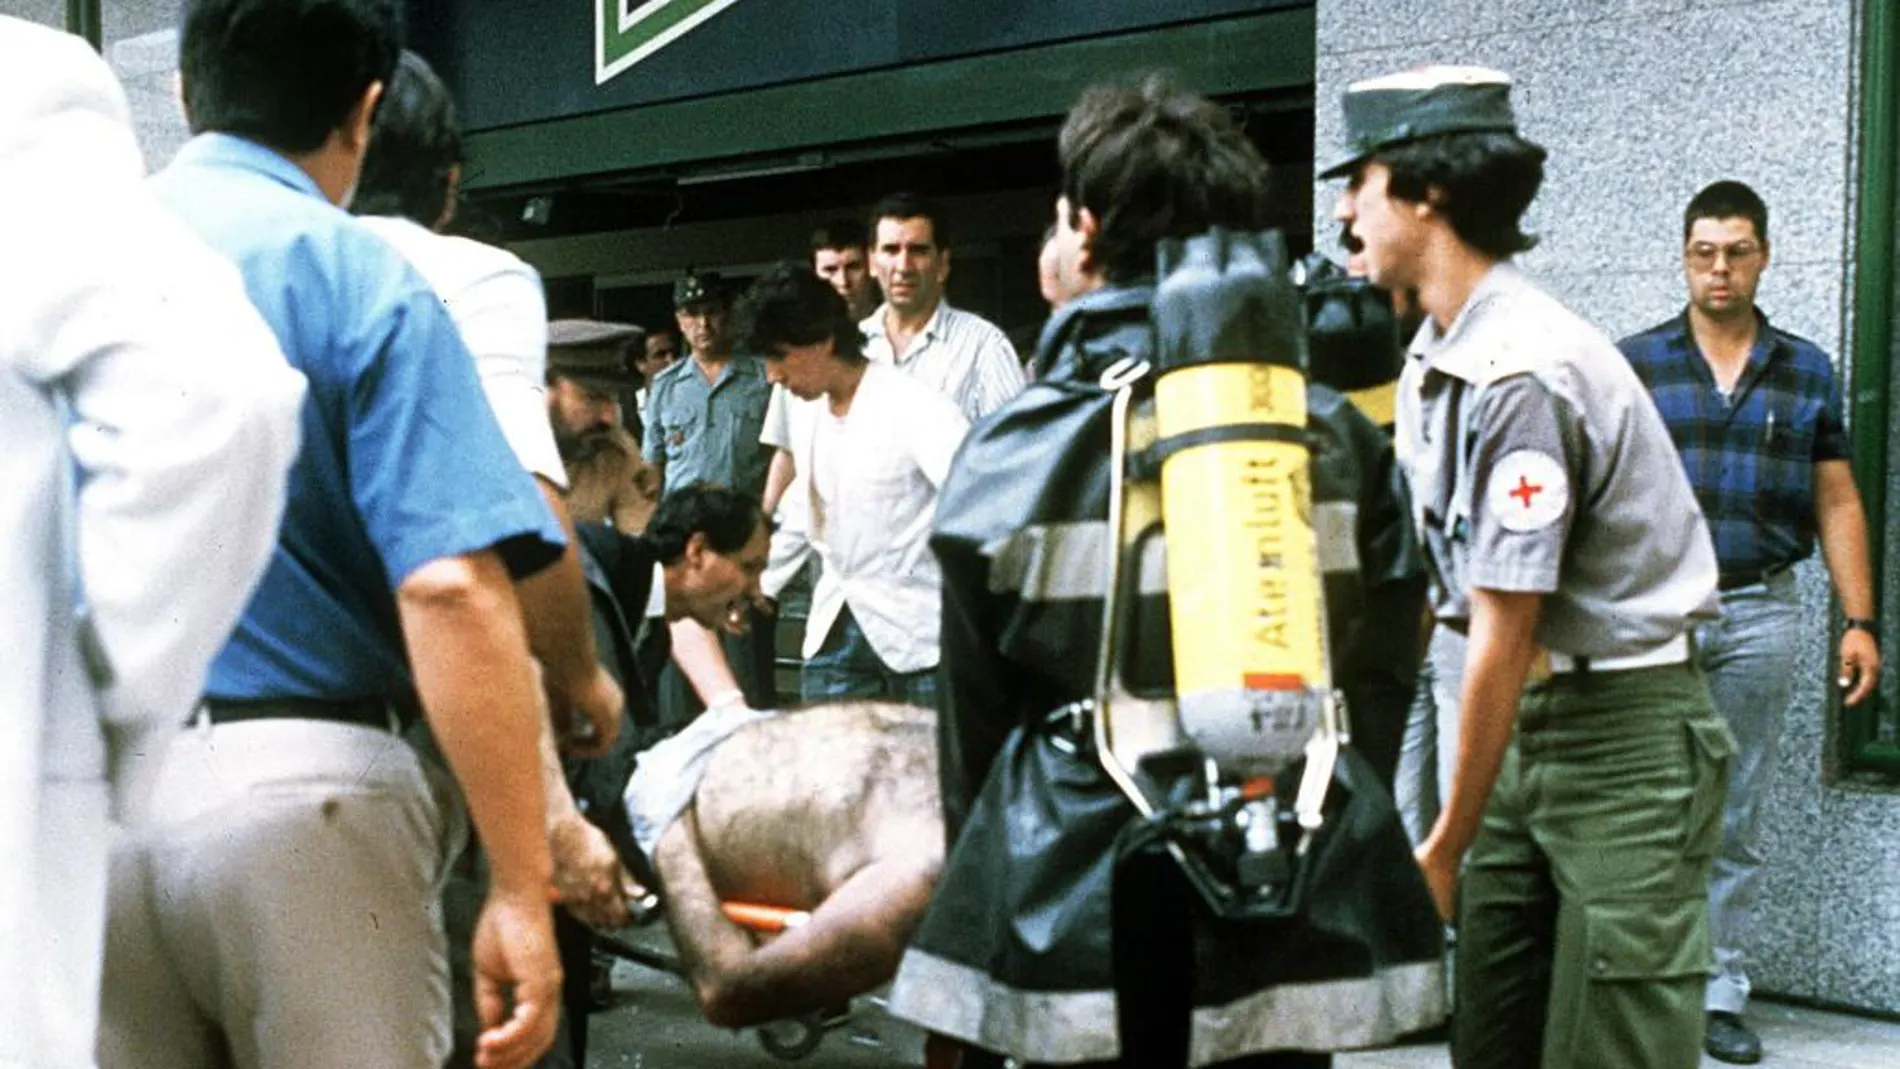 Fotografía de archivo tomada el 19 de junio de 1987, en la que se ve al traslado de una de las víctimas del atentado perpetrado por ETA en el supermercado Hipercor de Barcelona, en el que murieron 15 personas y 35 resultaron heridas.